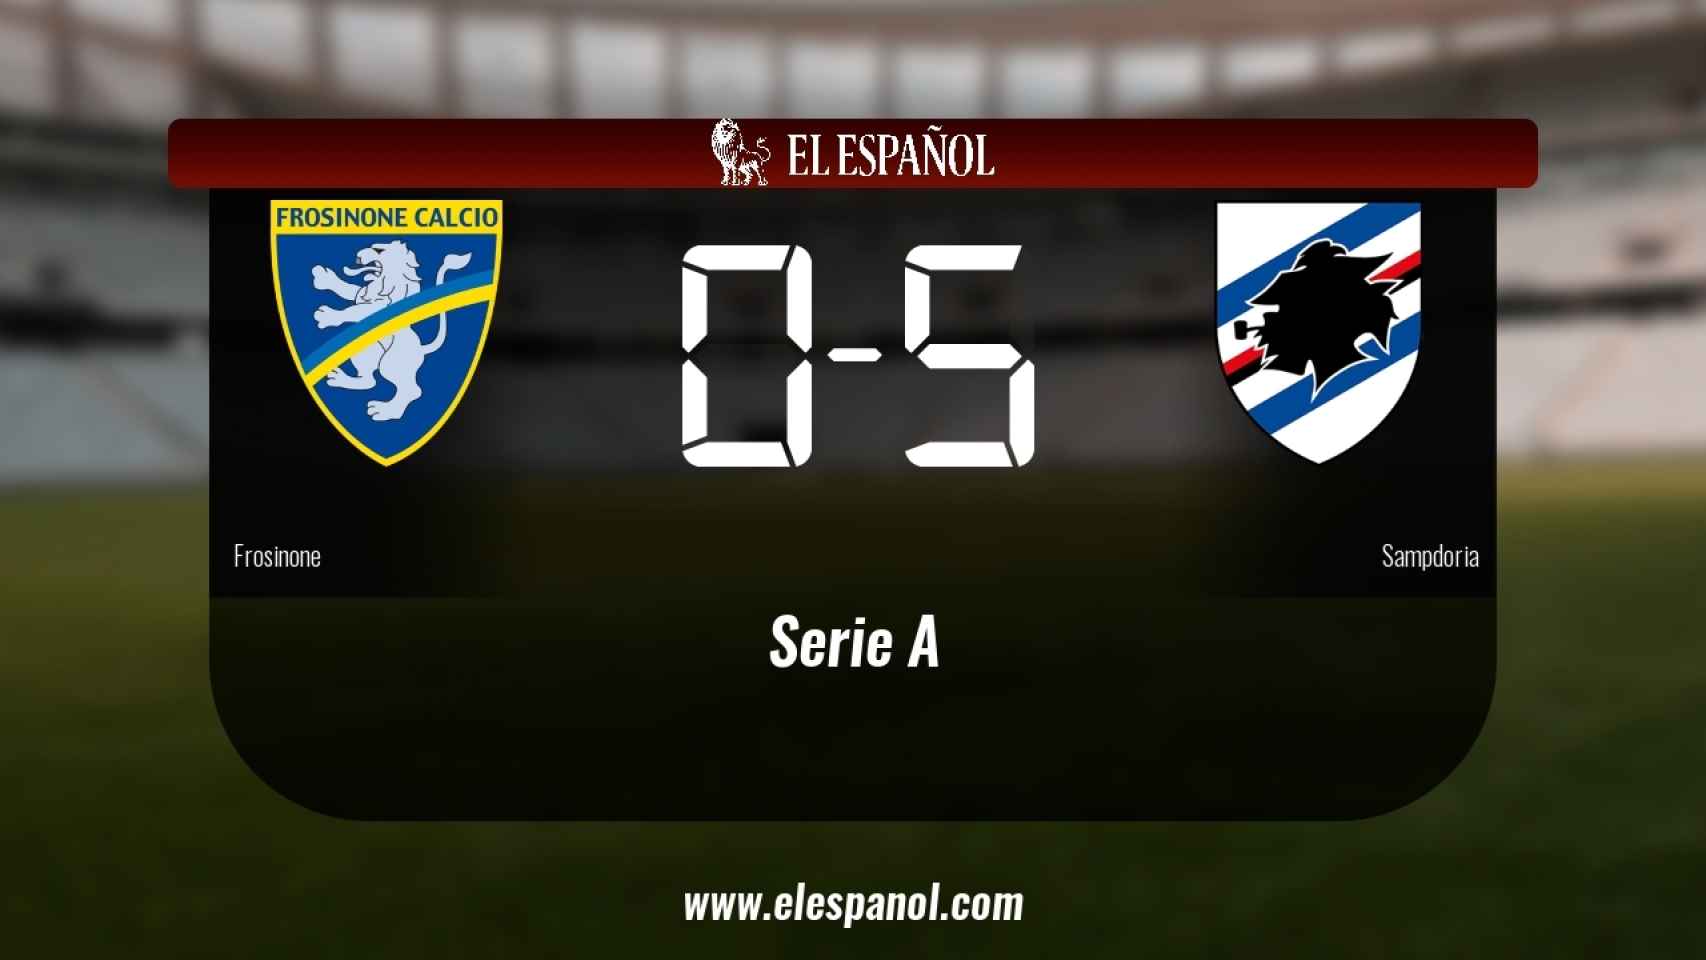 La Sampdoria derrotó al Frosinone por 0-5